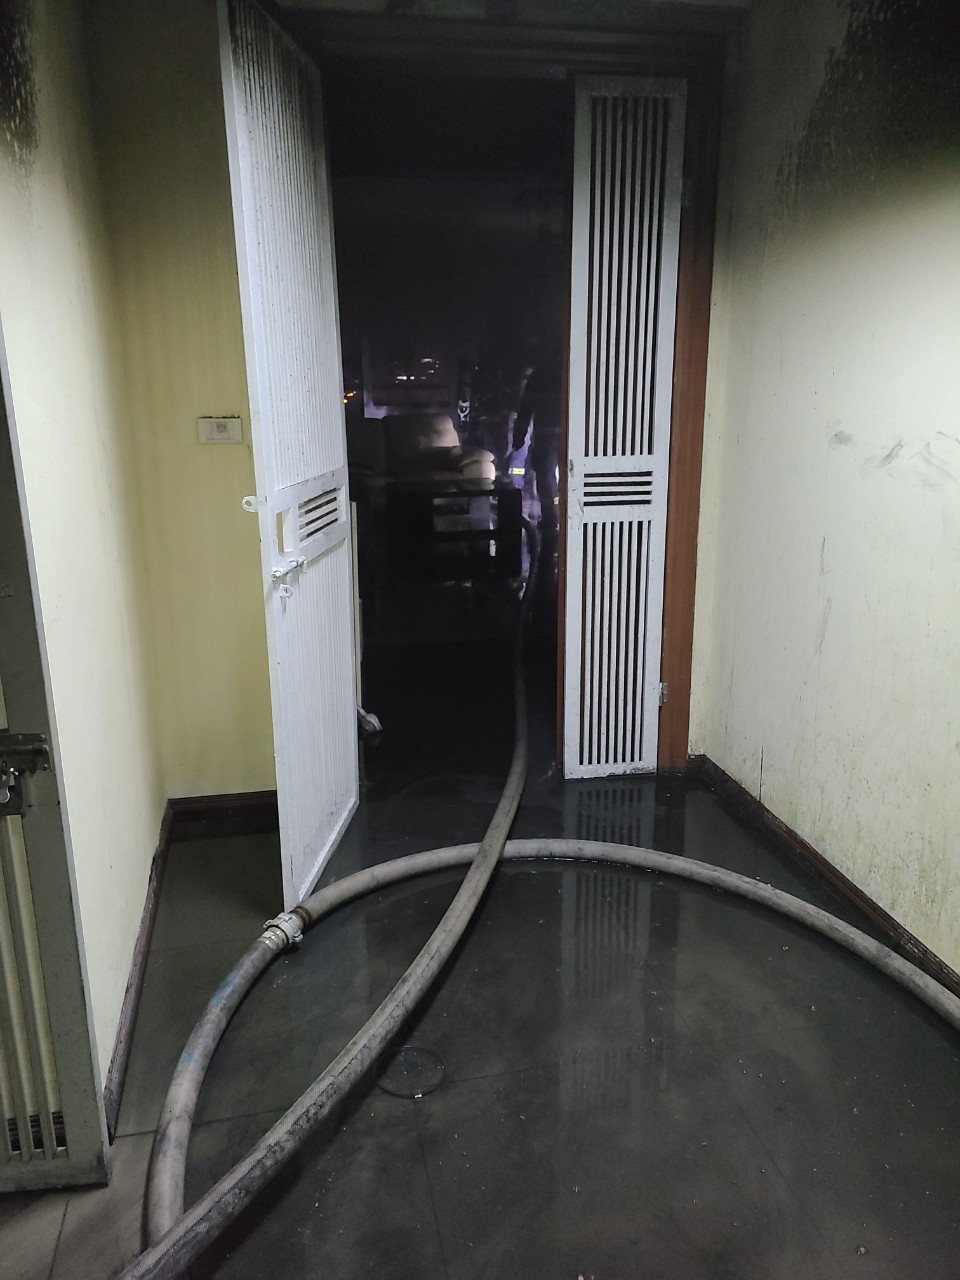 Hà Nội: Cháy chung cư ở La Khê, 11 người được cứu thoát - Ảnh 2